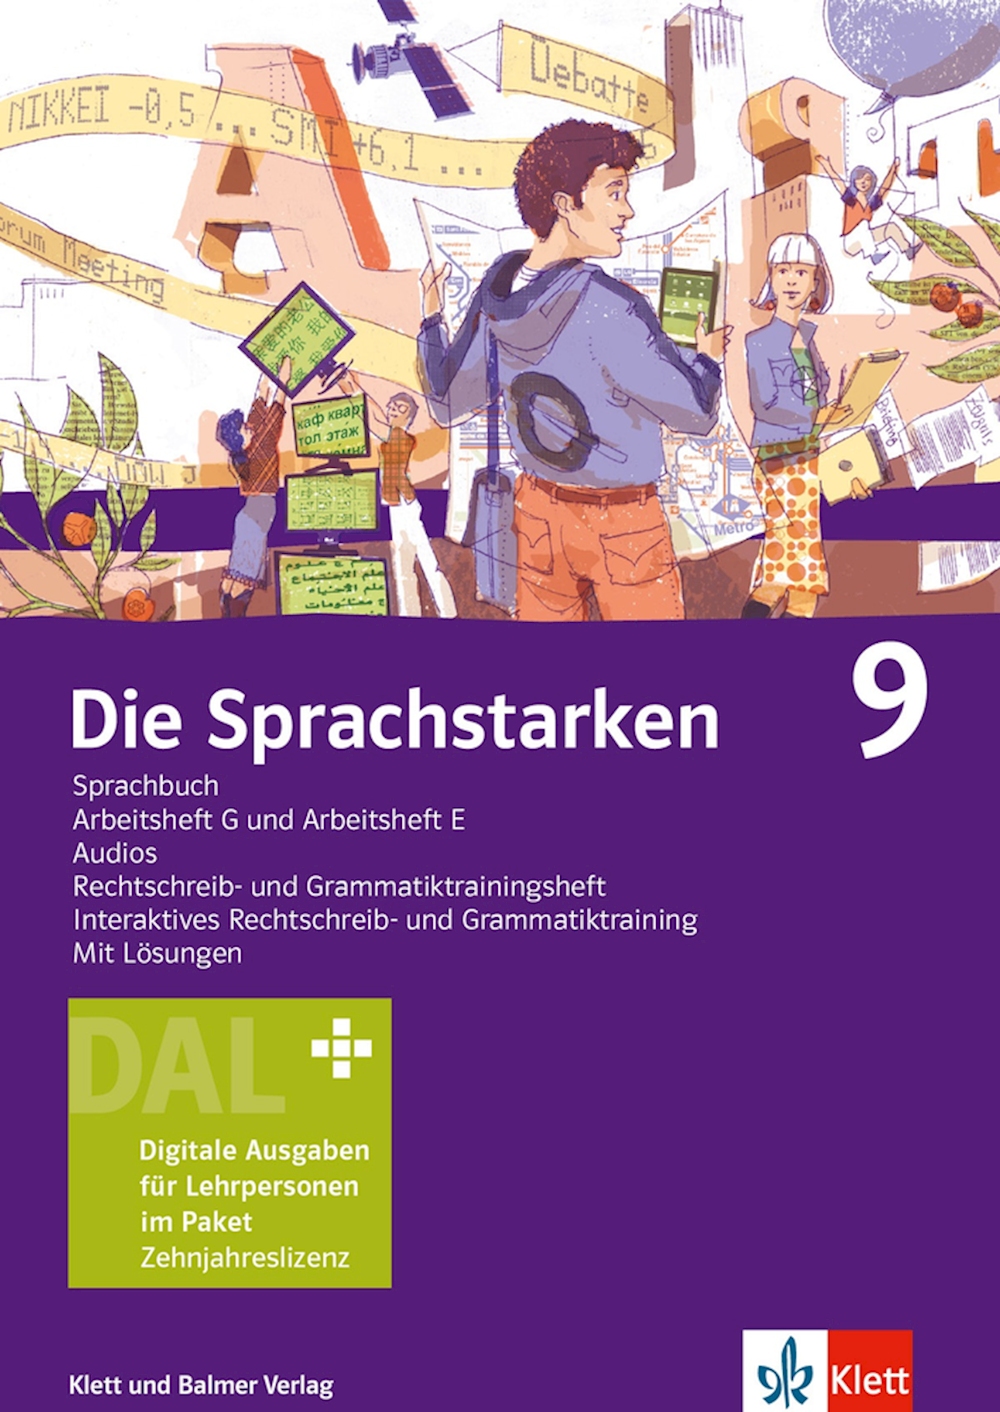 Die Sprachstarken 9, Set DAL digitale Ausg. f. LP, 10-Jahreslizenz